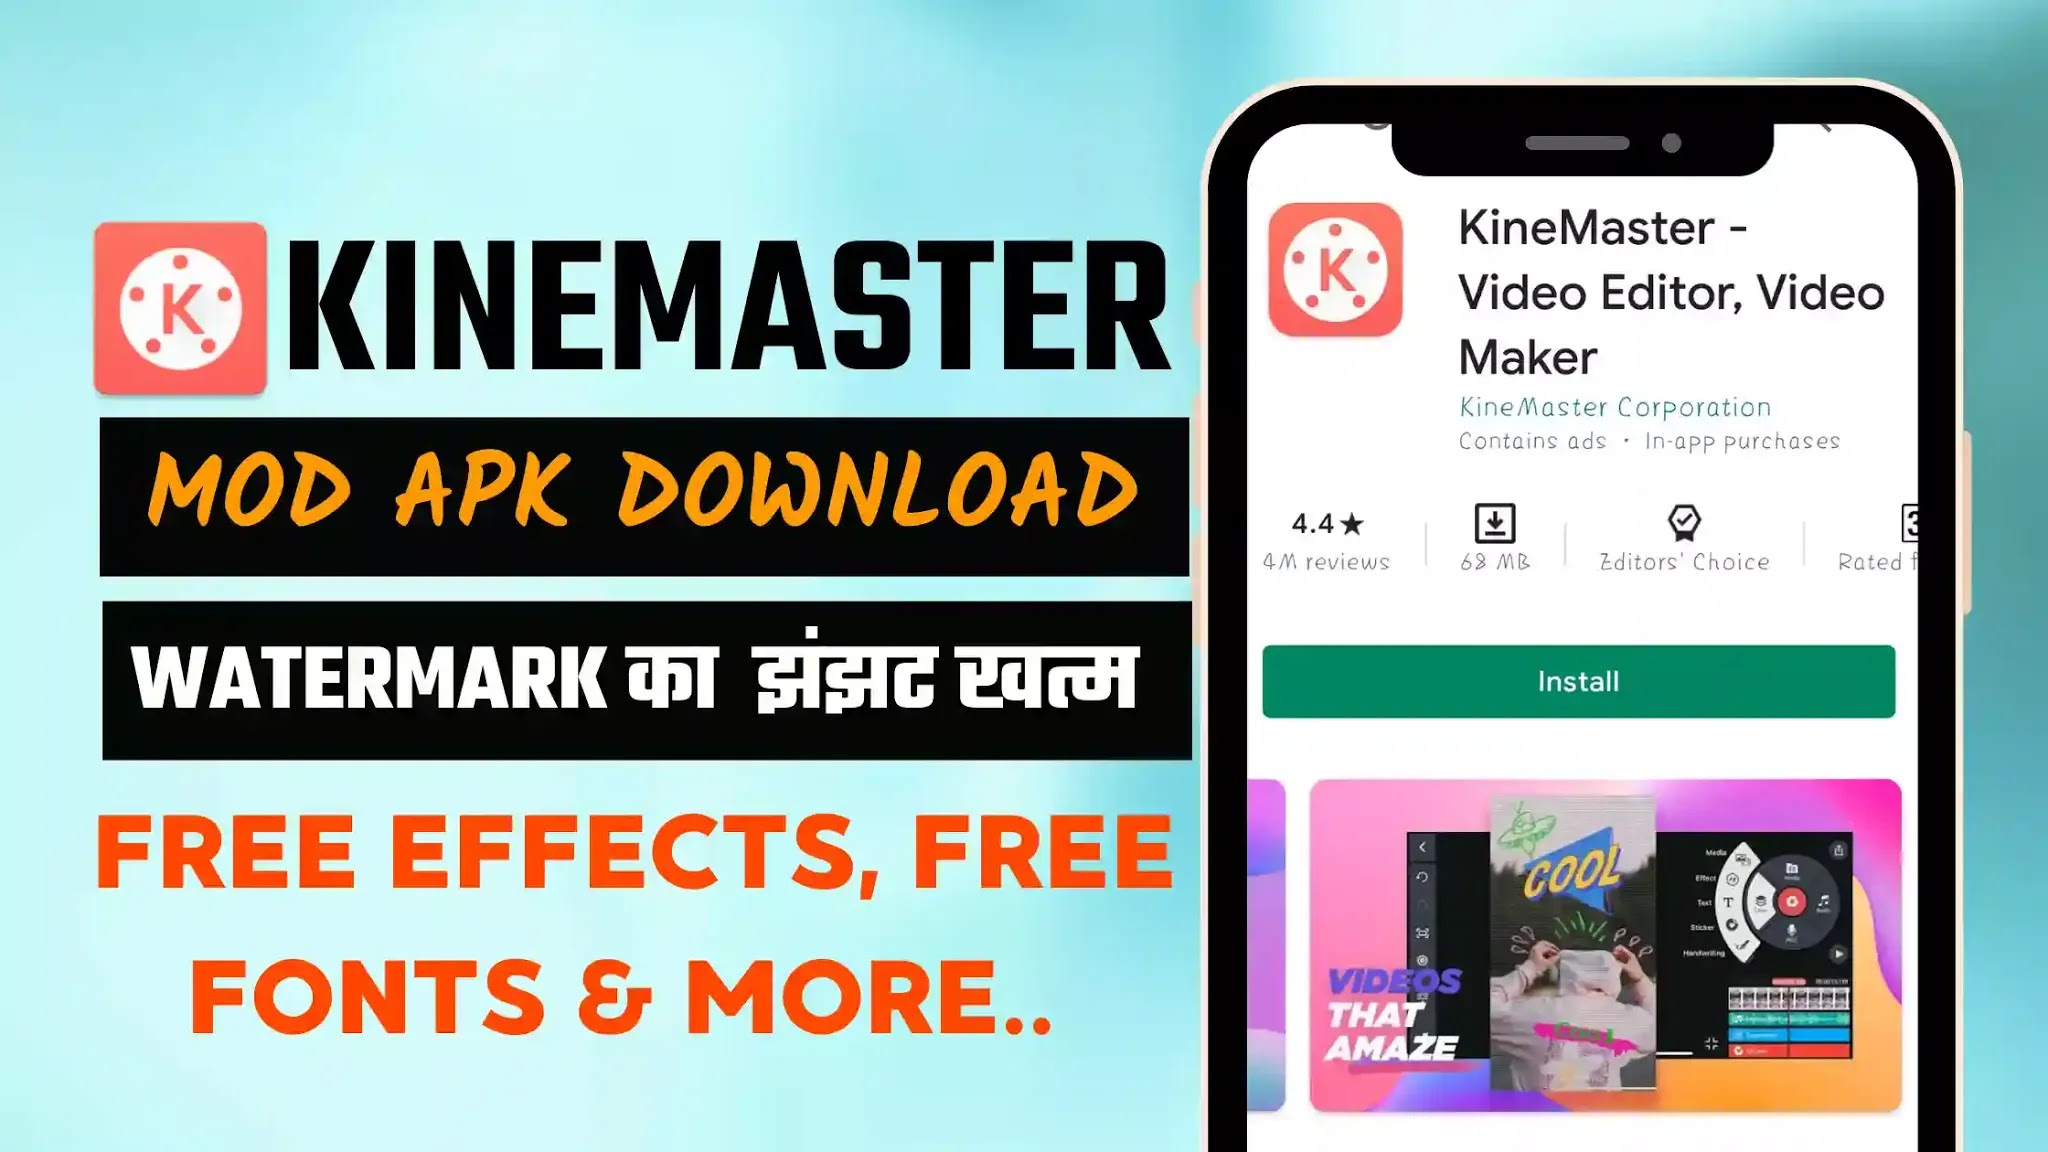 kinemaster andriod mod apk V5. 0.1 download in 2021